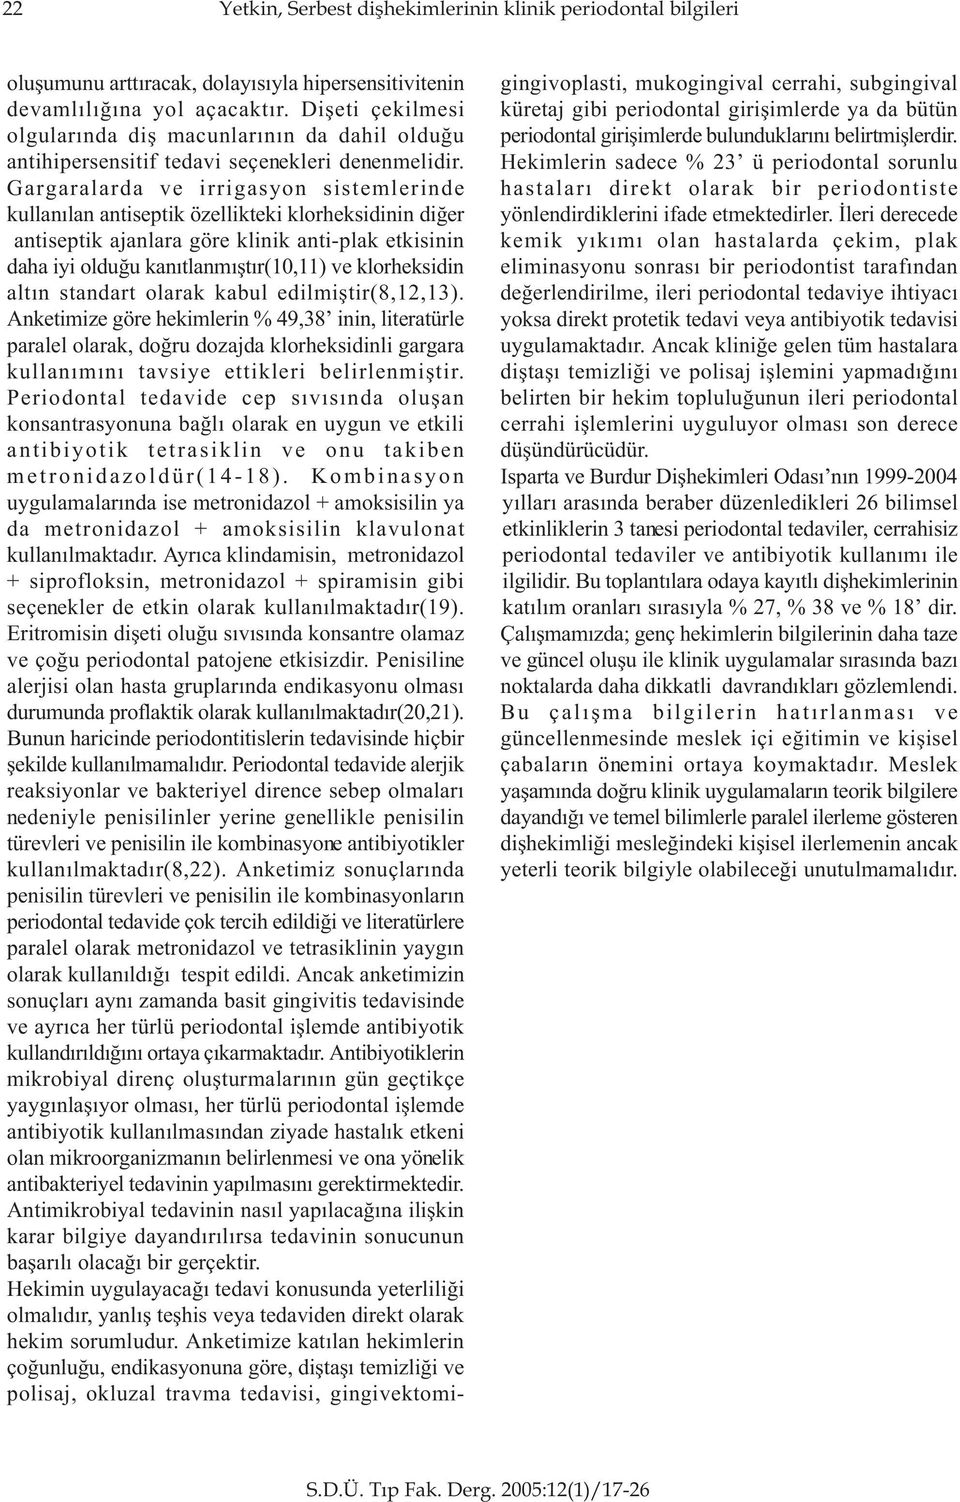 Gargaralarda ve irrigasyon sistemlerinde kullanýlan antiseptik özellikteki klorheksidinin diðer antiseptik ajanlara göre klinik anti-plak etkisinin daha iyi olduðu kanýtlanmýþtýr(10,11) ve